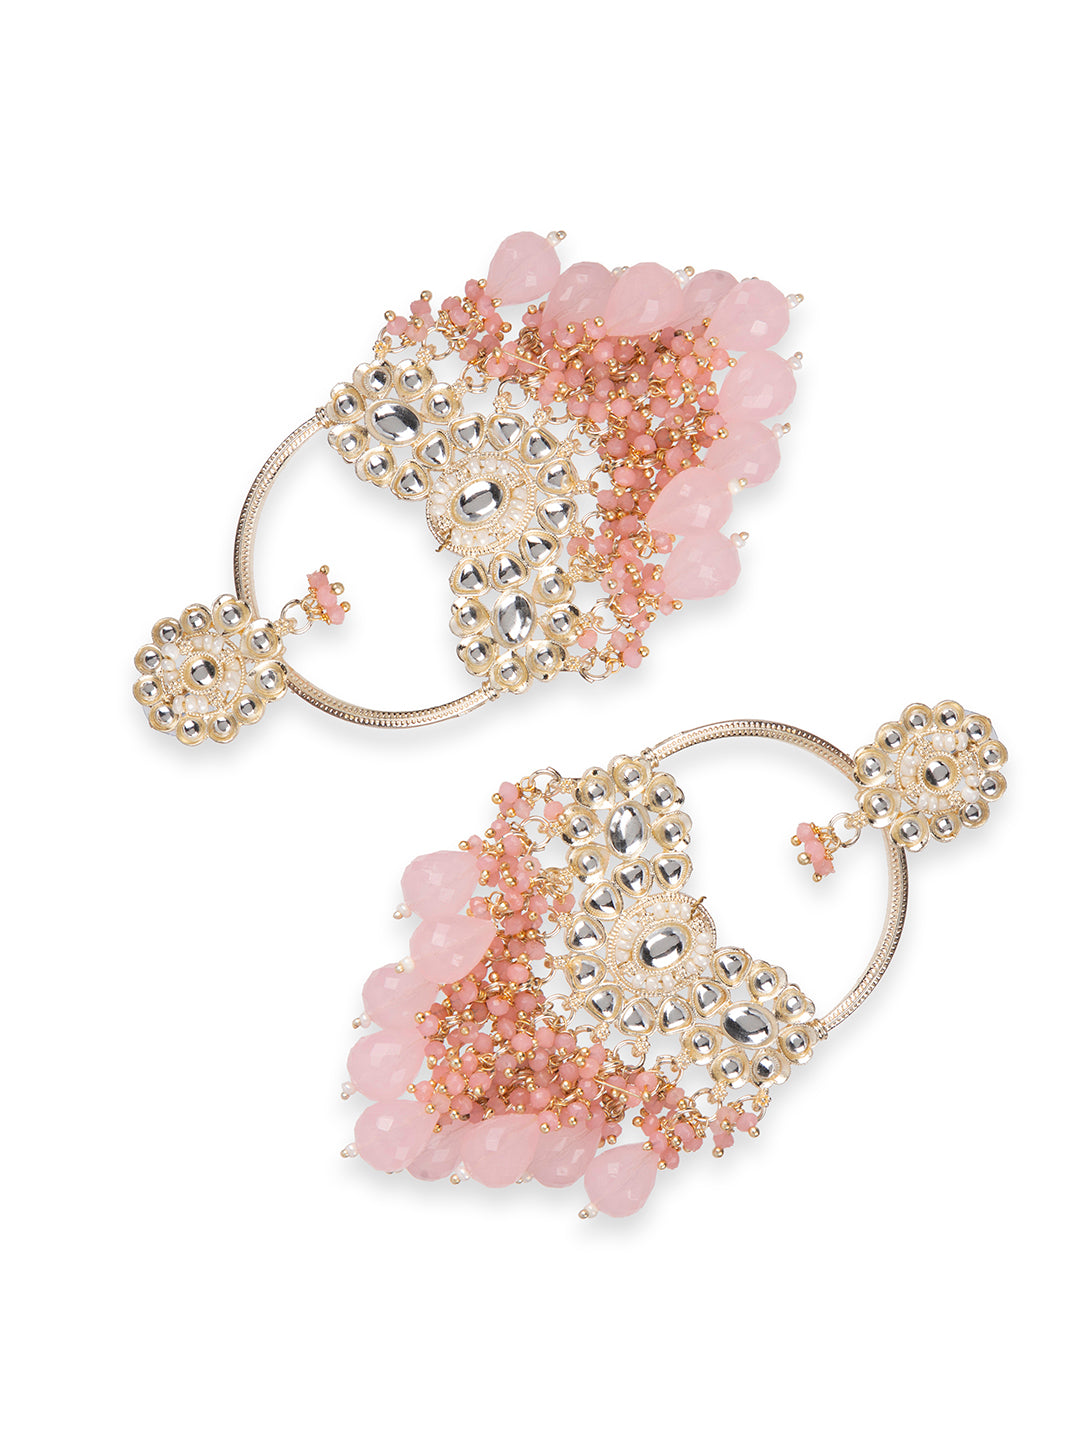 Colorful Tassel Earrings for Women | Light Pink Layered Tassle 3 Tier  Bohemian Earrings | Dangle Drop Earrings for Girls Gifts - Walmart.com